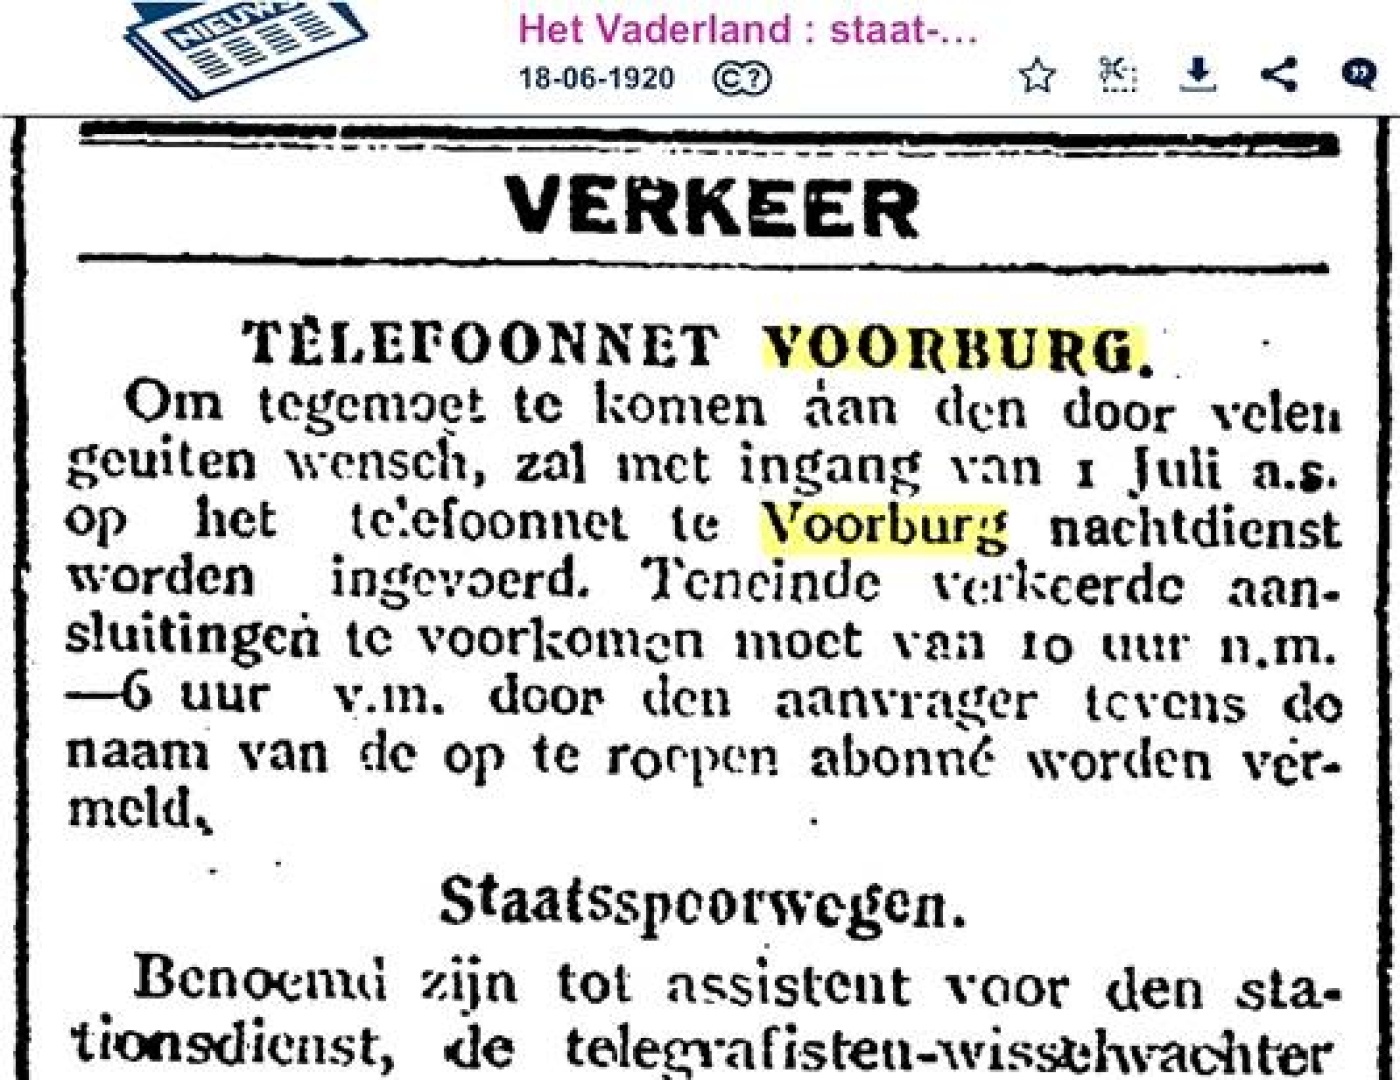 1920 juni Telefoonnetvoorburg1.jpg